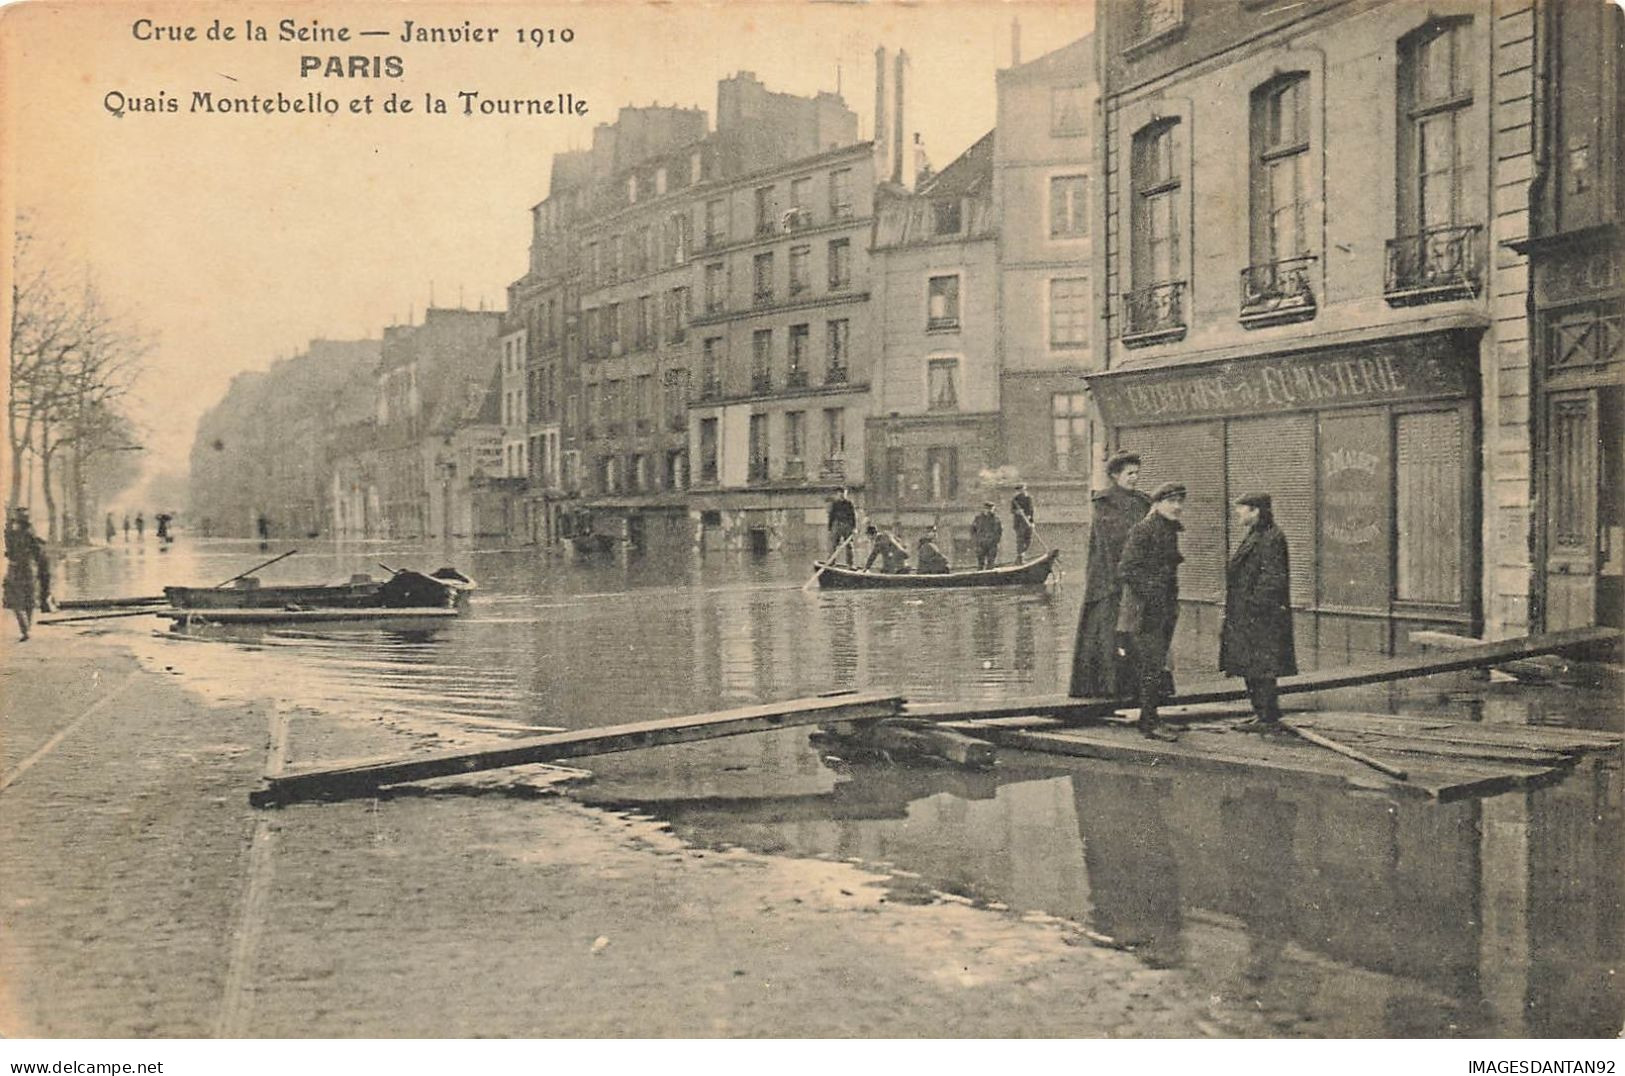 75 PARIS #22791 CRUE DE LA SEINE INONDATIONS 1910 QUAIS MONTEBELLO ET LA TOURNELLE BARQUE CANOT - La Crecida Del Sena De 1910